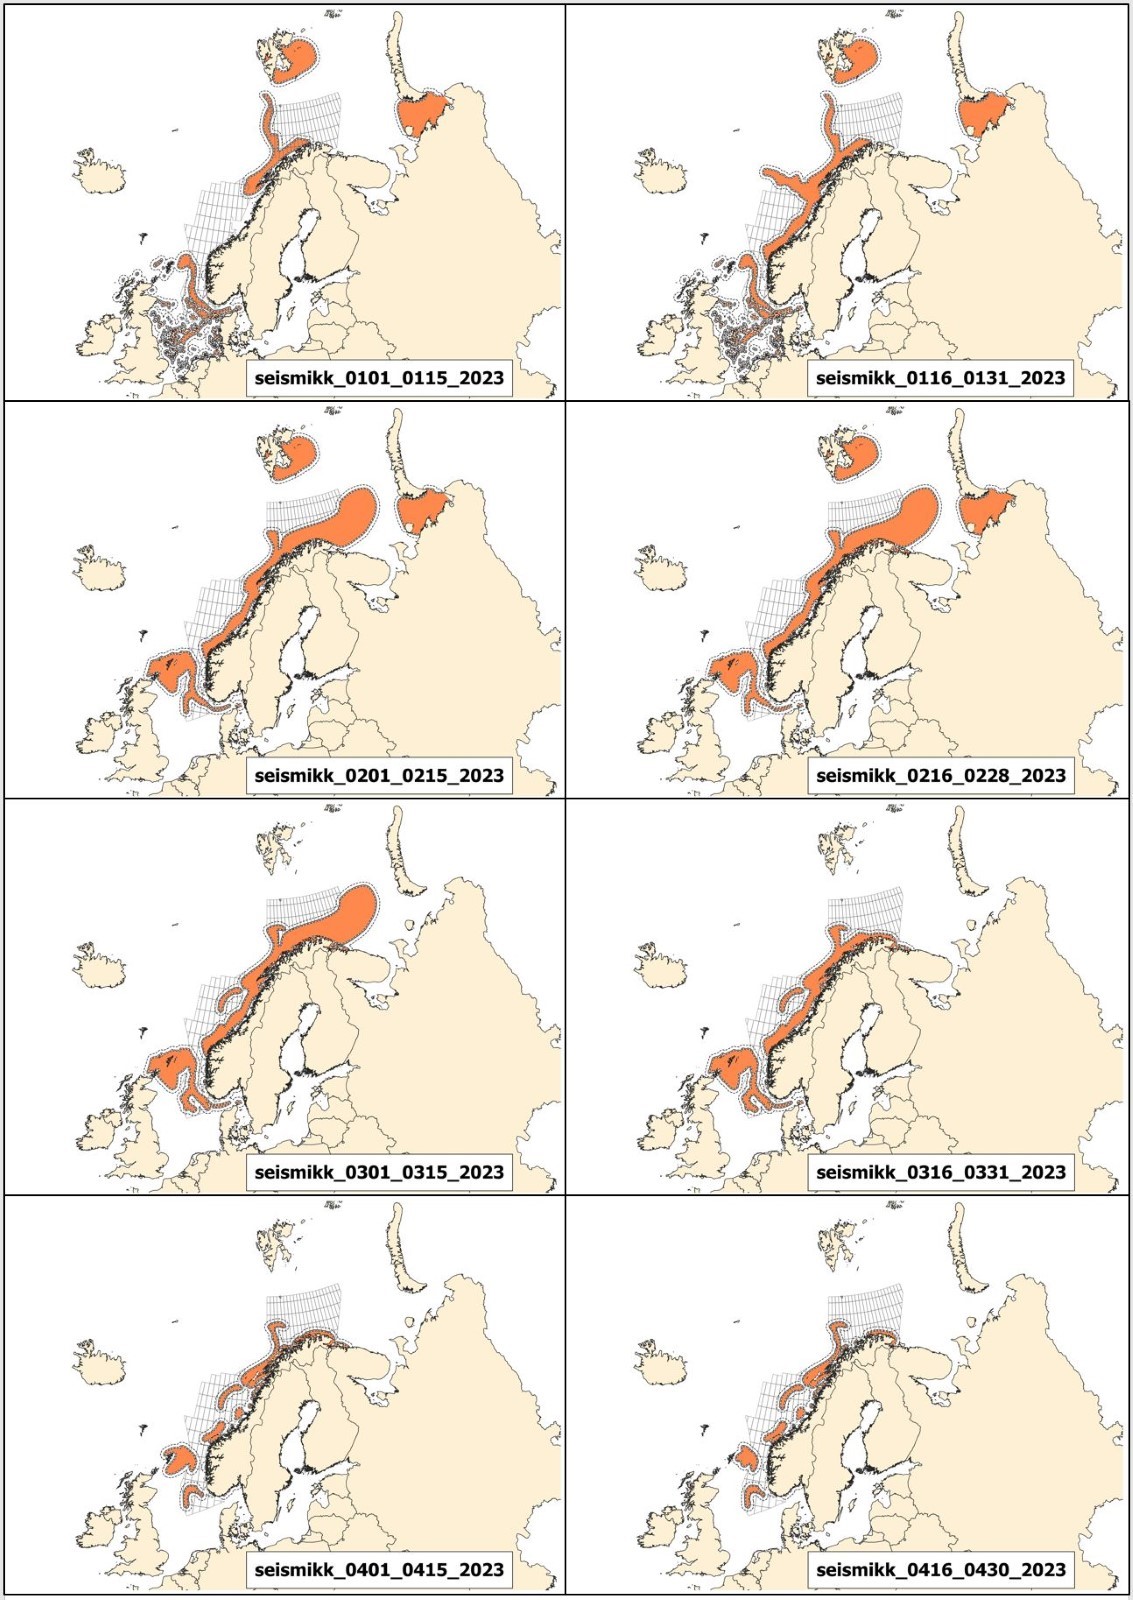 Rådgivningskart for seismikk for 1. januar til 30. april 